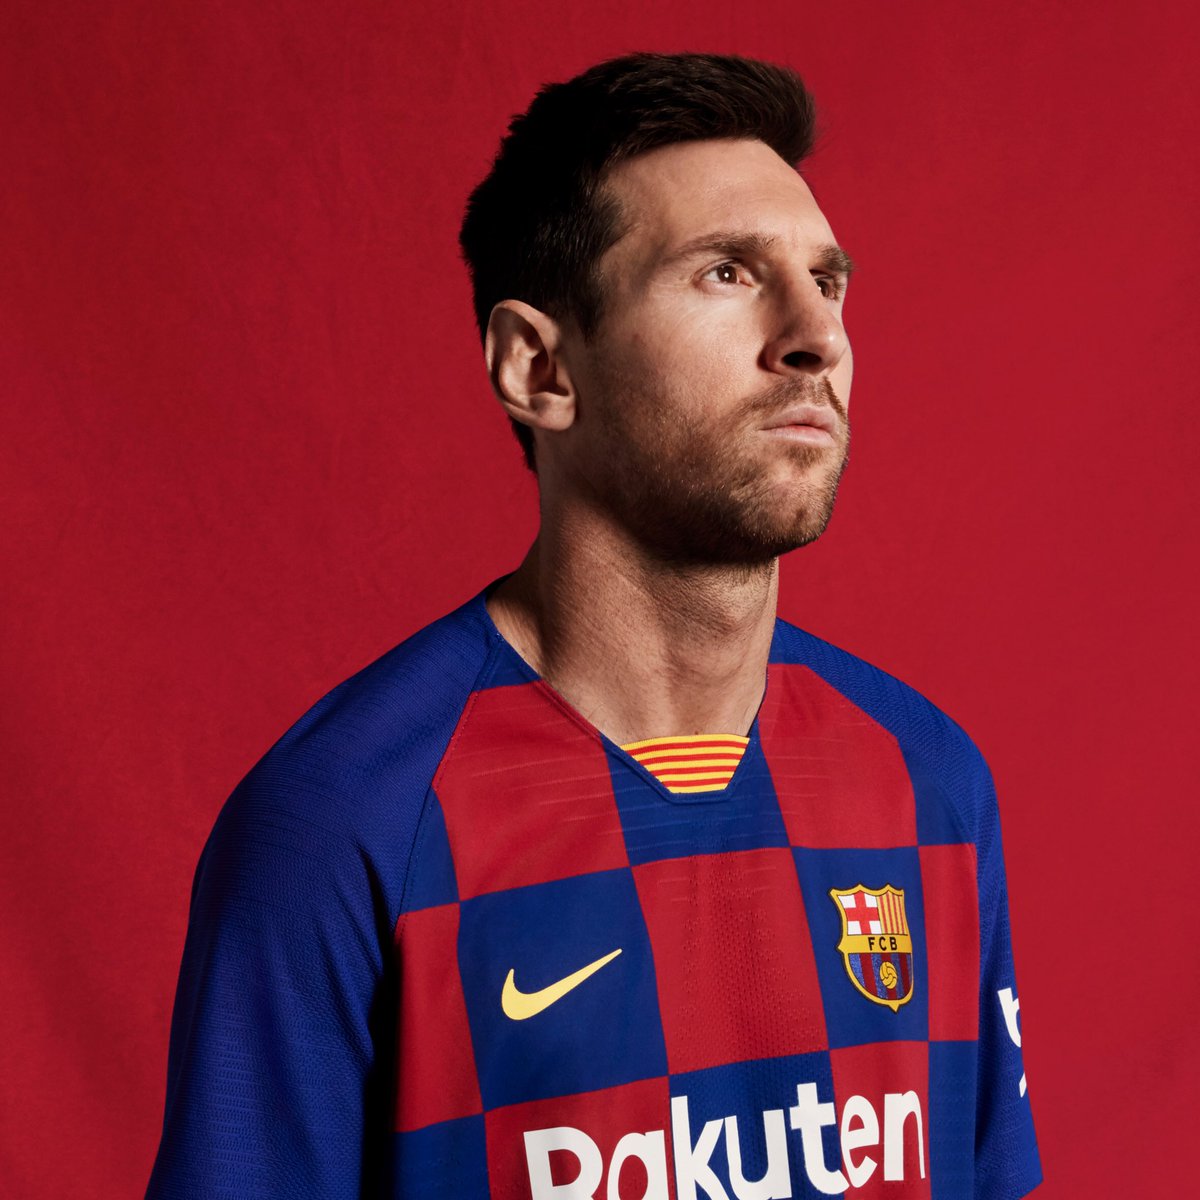 fc barcelona 2019 kit